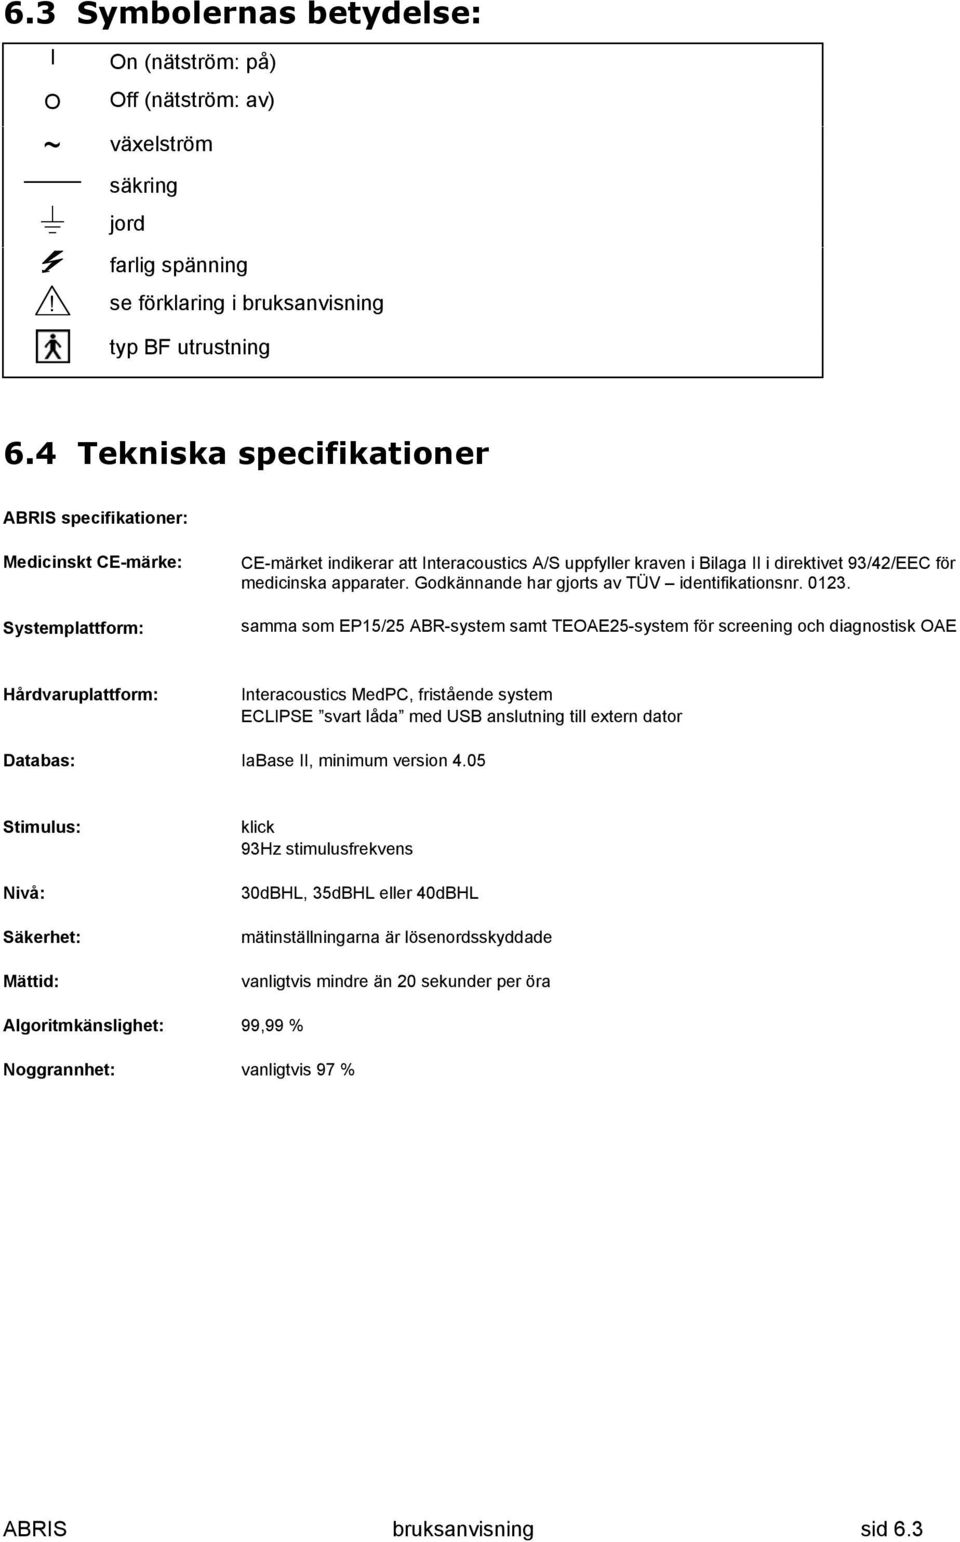 apparater. Godkännande har gjorts av TÜV identifikationsnr. 0123.